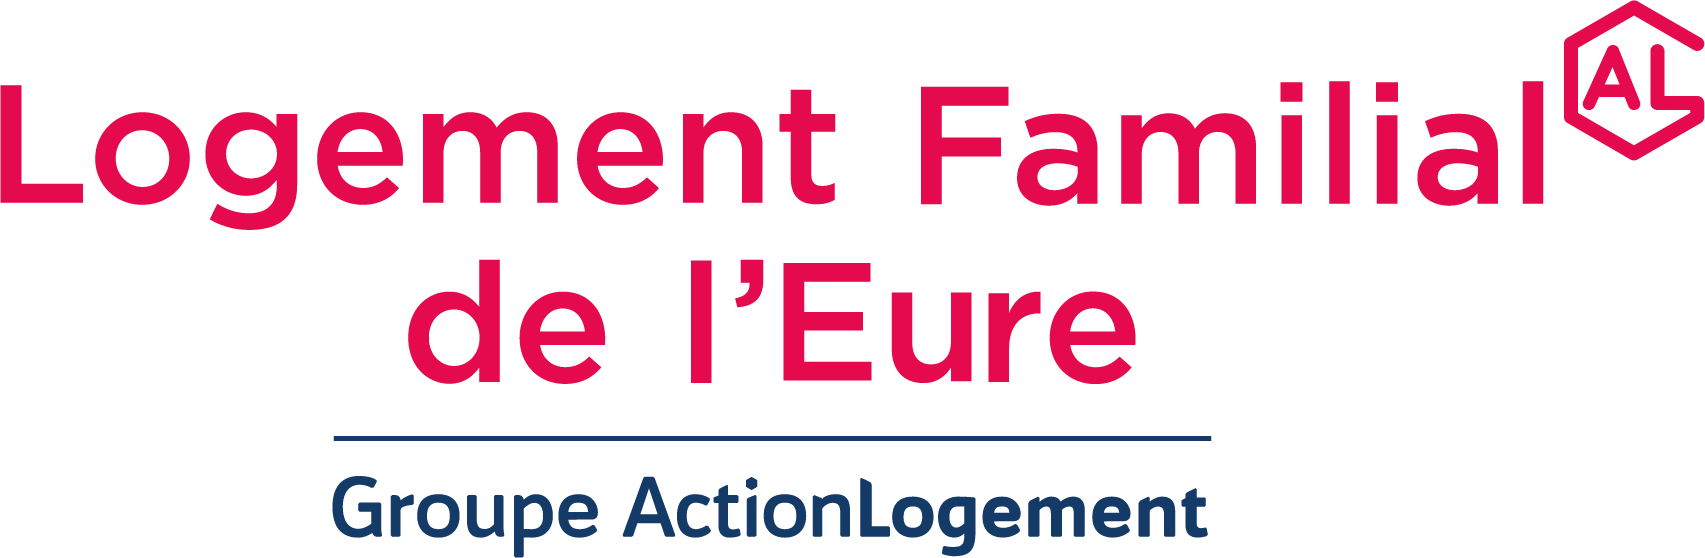 Logo Logement Familial de l'Eure